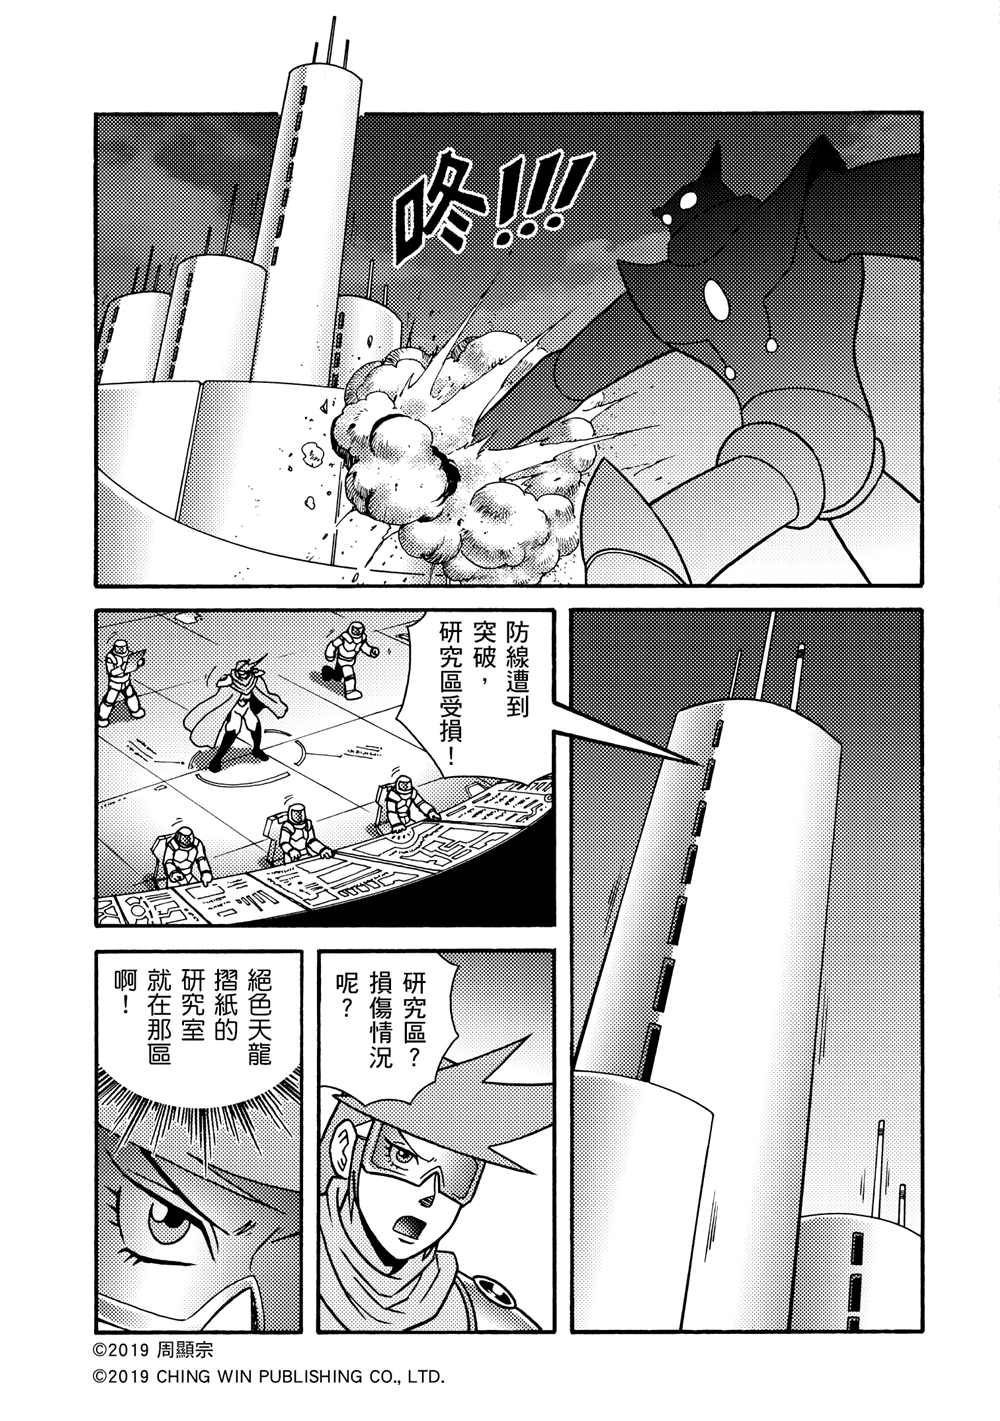 折纸战士A漫画,第3回剪纸战衣对决5图